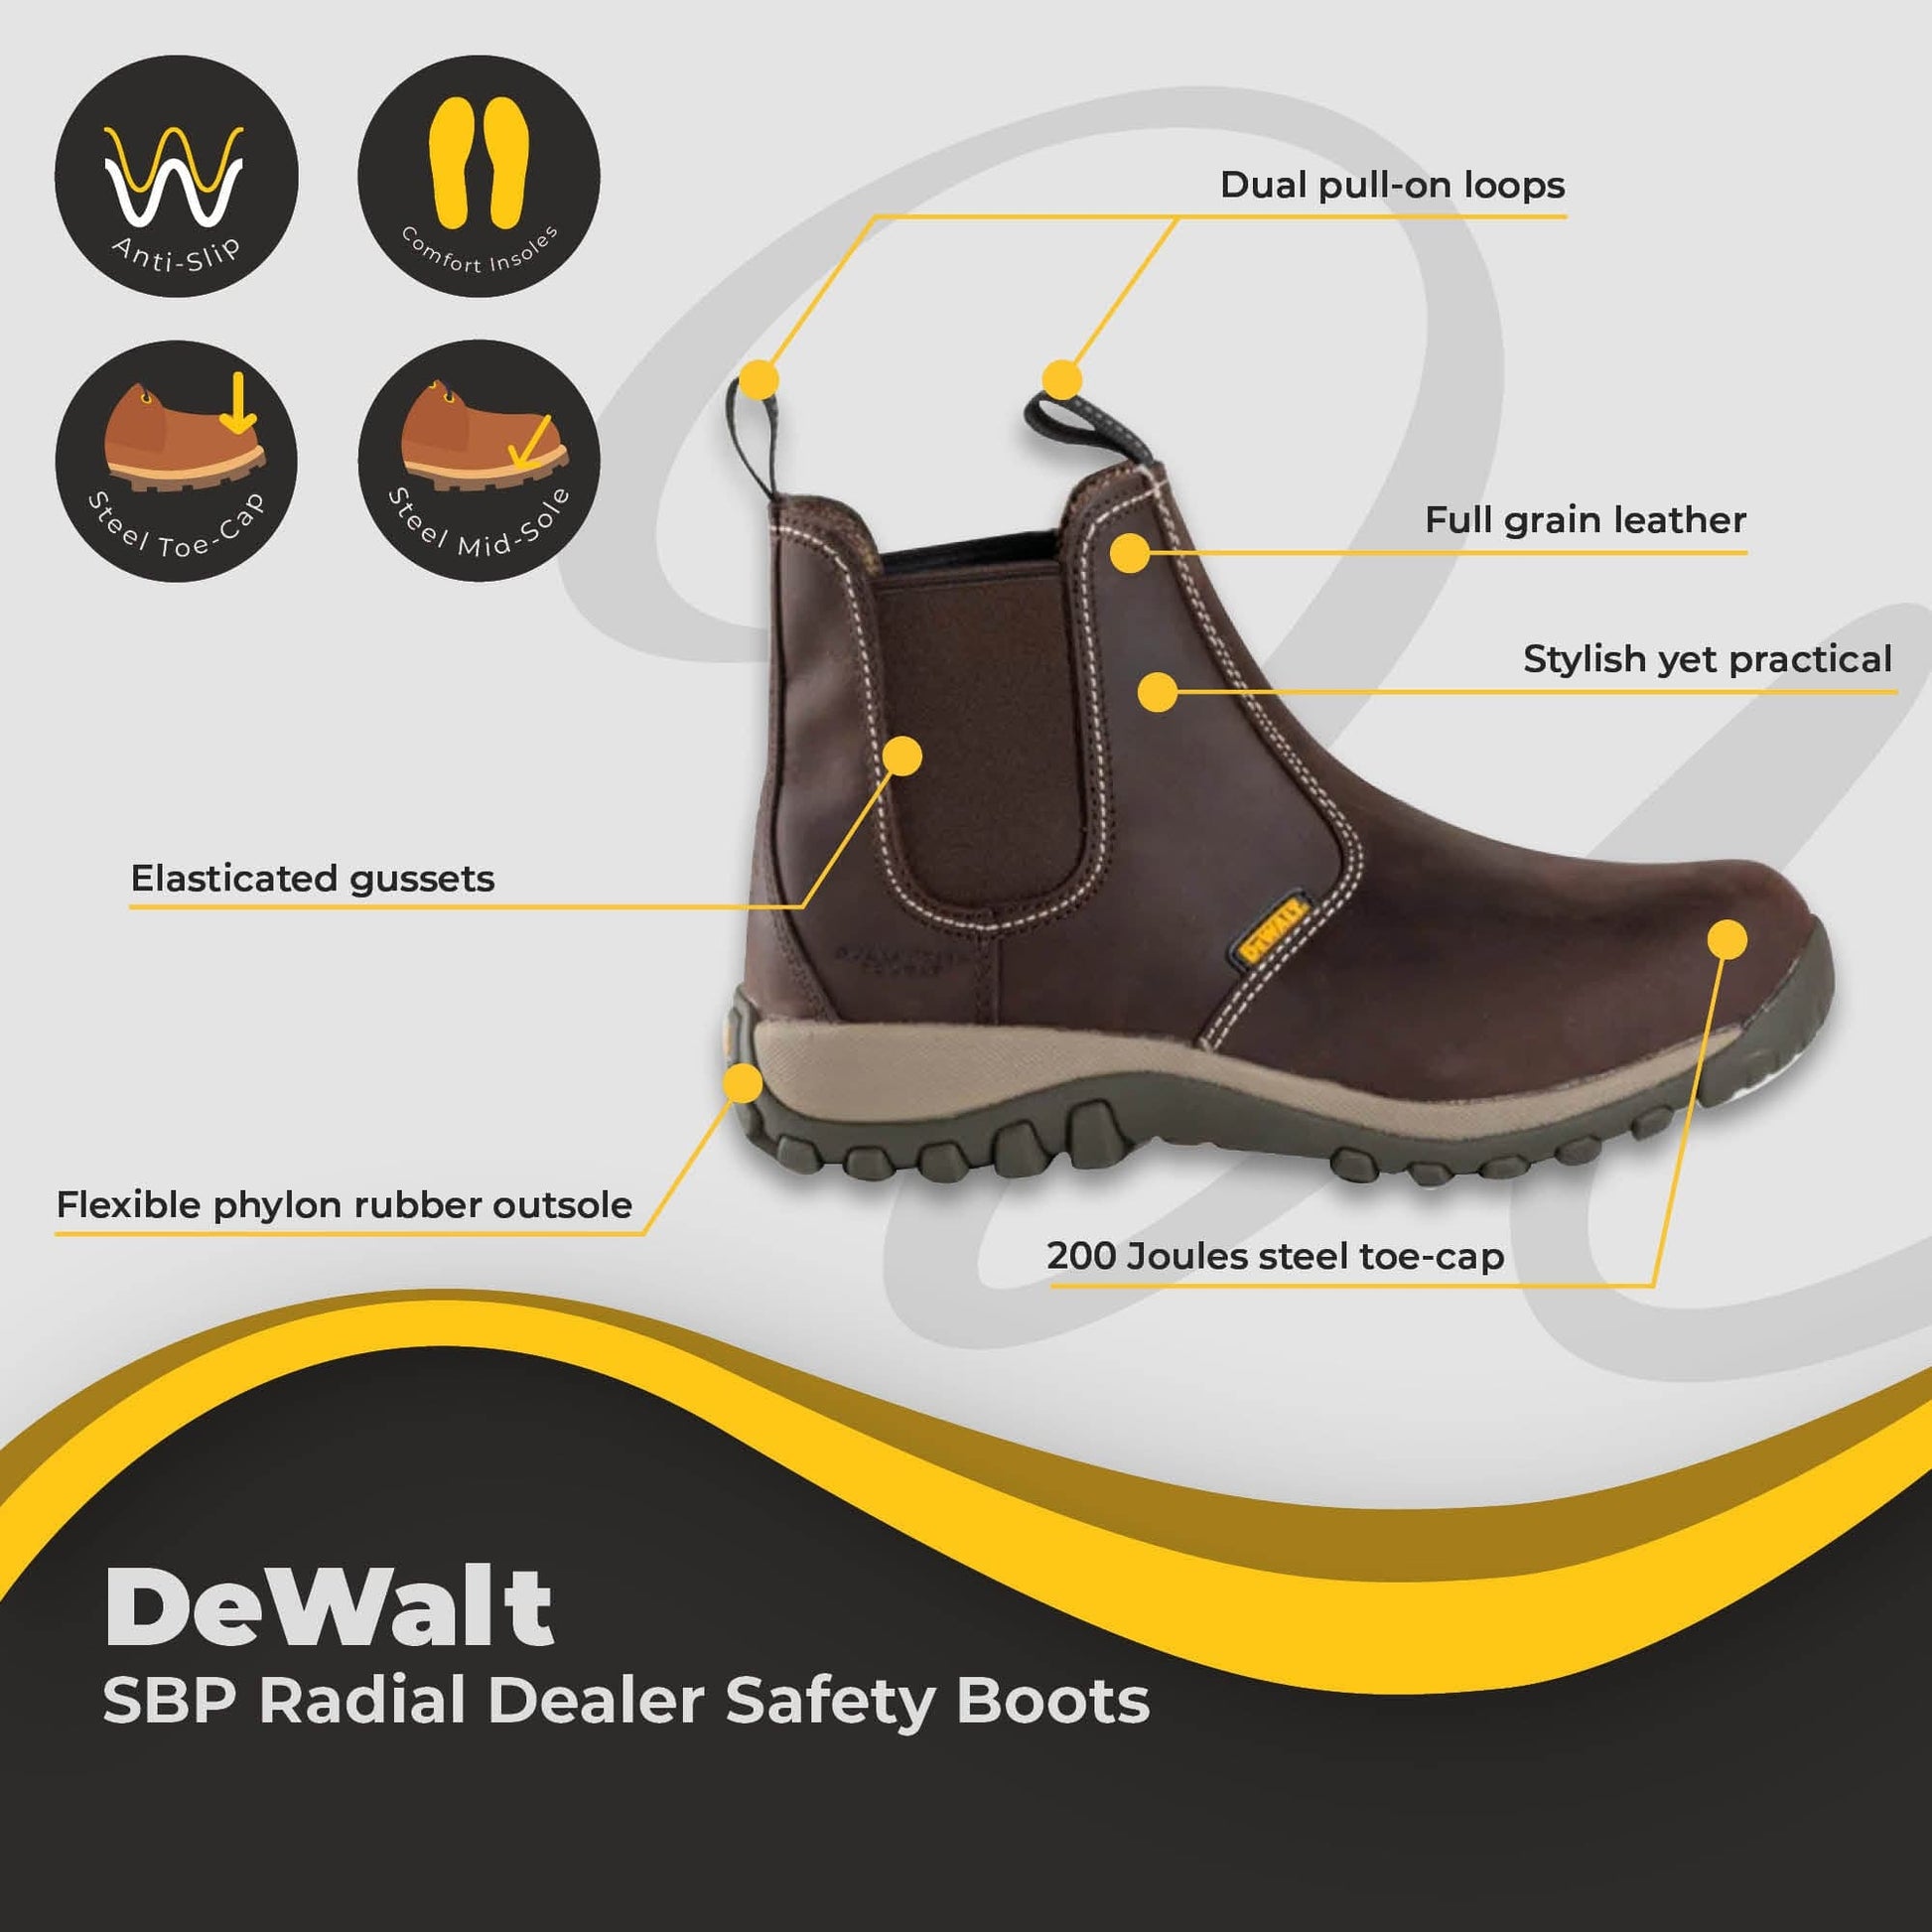 dewalt radial dealer sbp safety boot dd266 br06